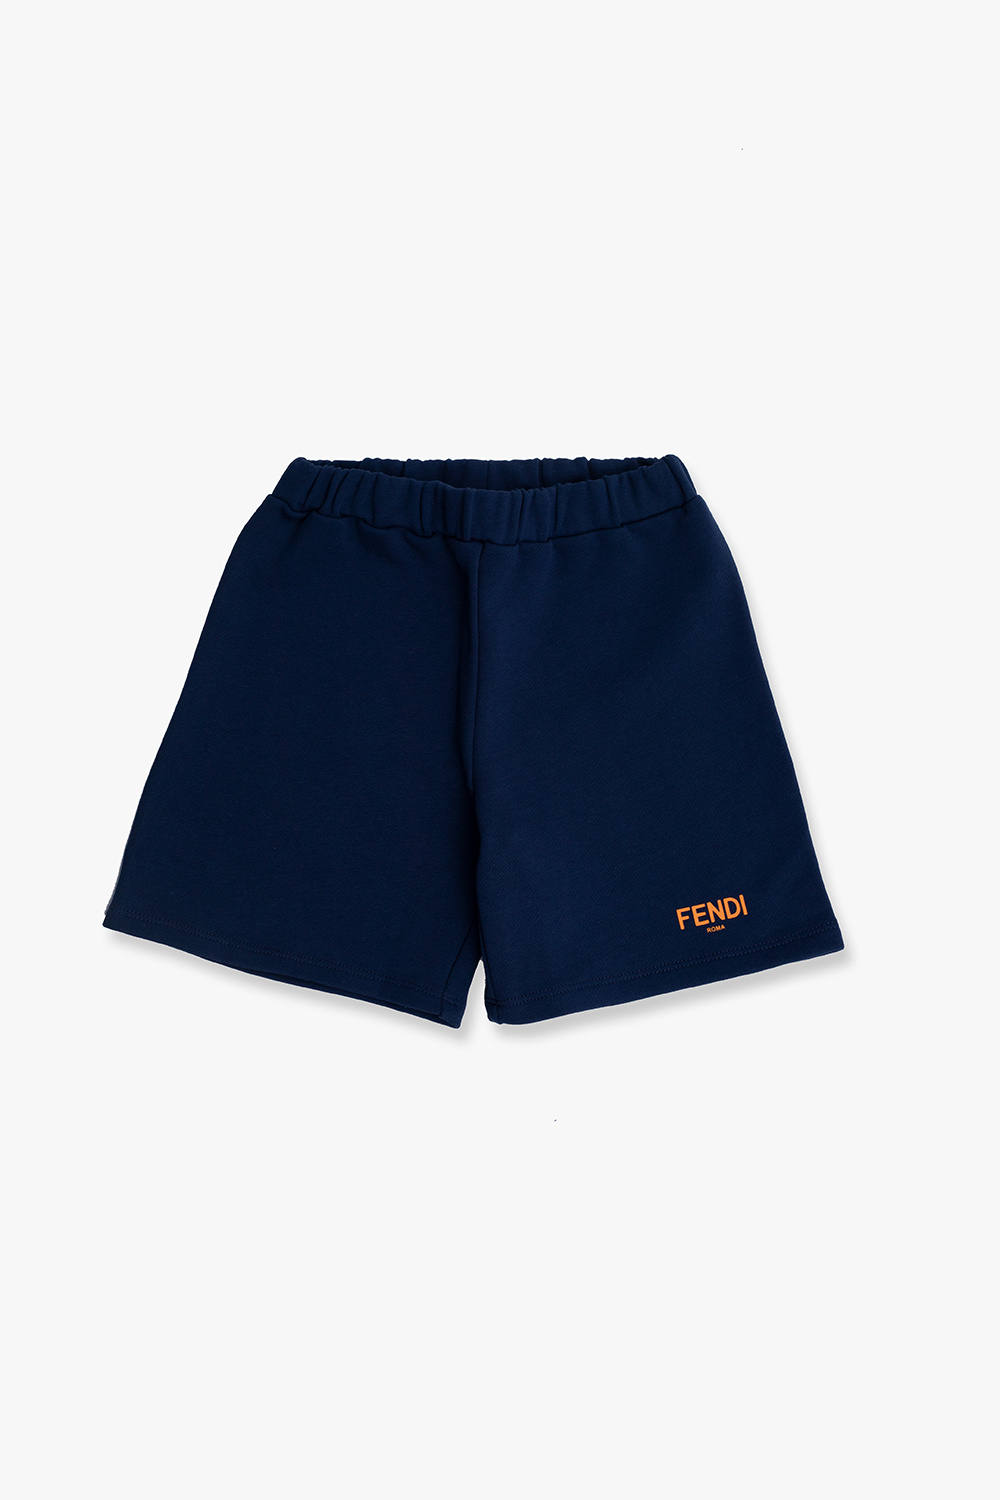 Fendi Kids Shorts with logo